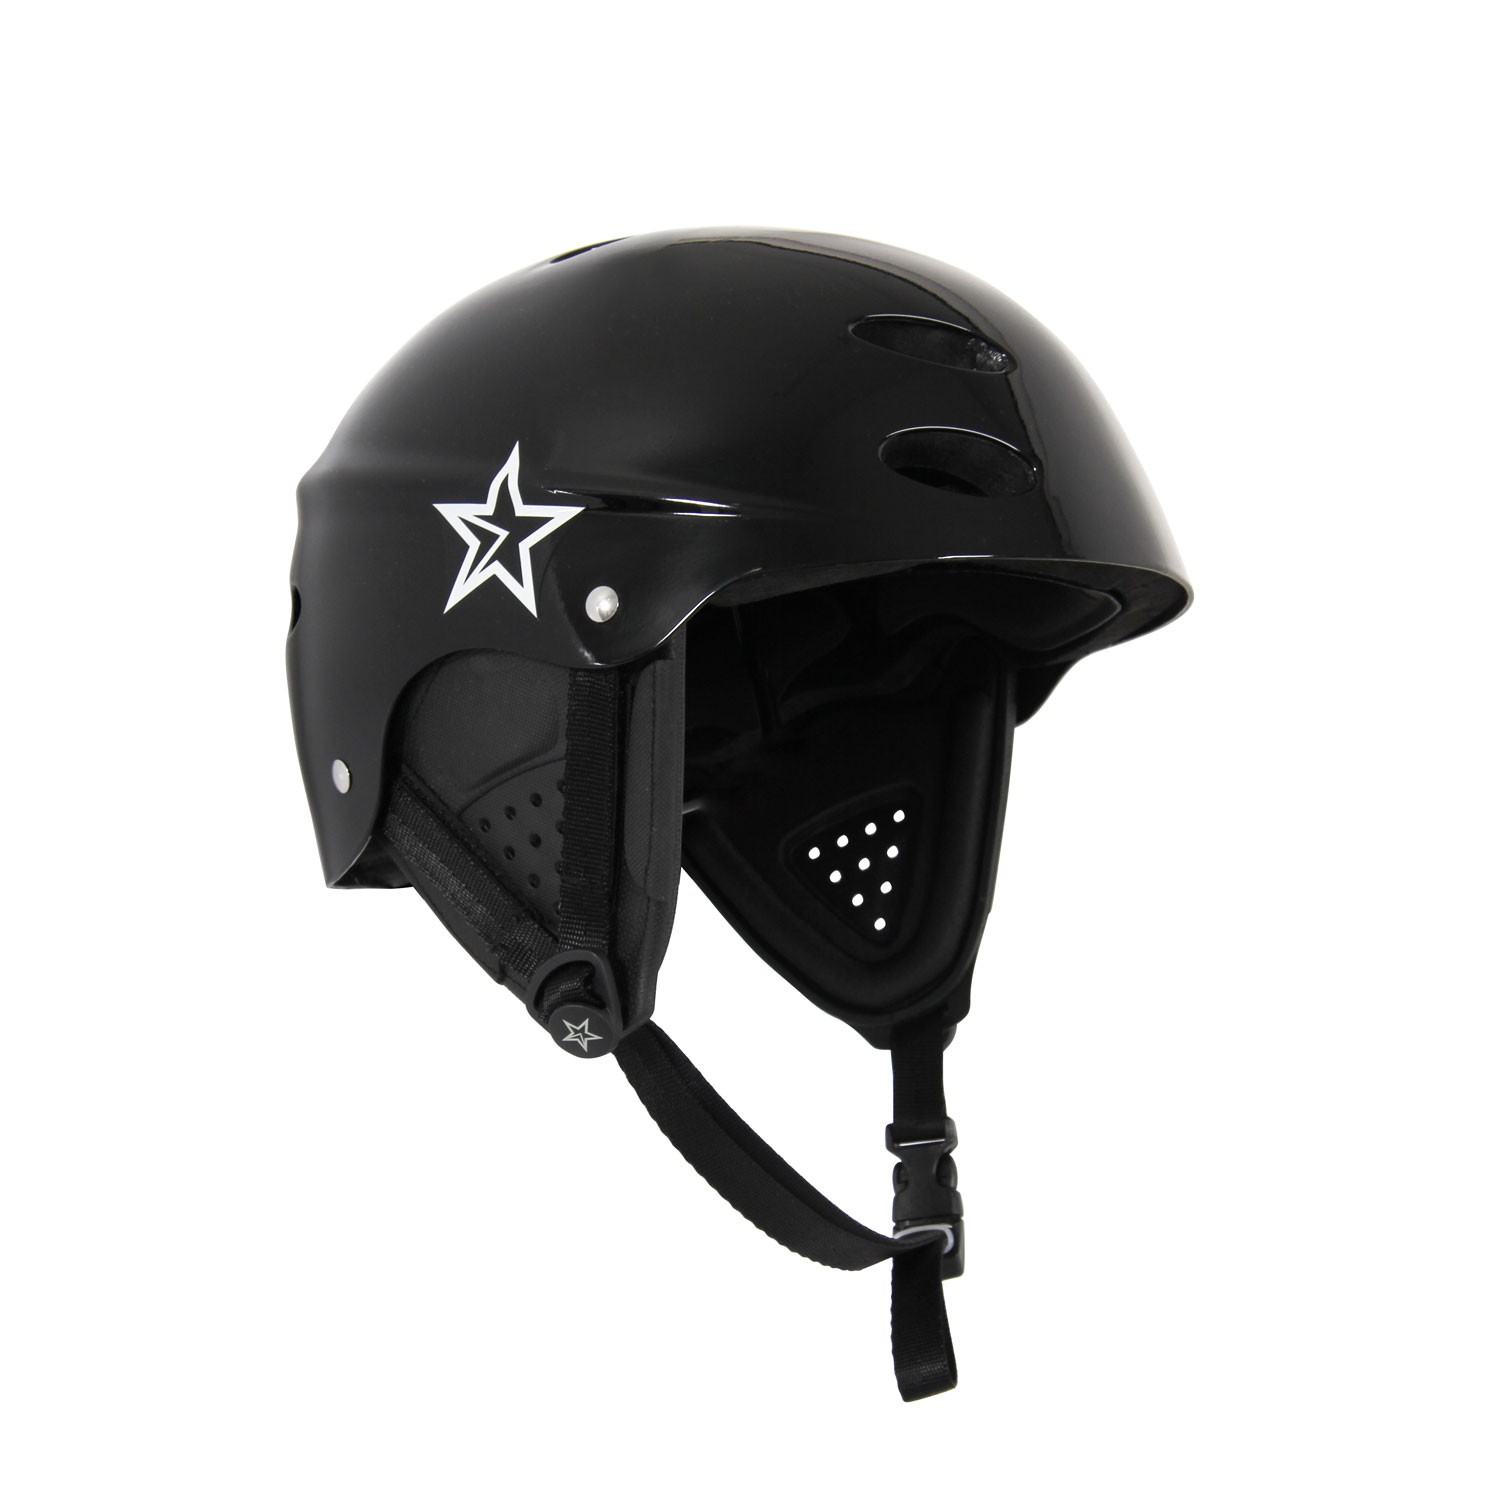 Wakeboard Helm JOBE VICTOR Helm 2020 black Kite Wake Board Helm 